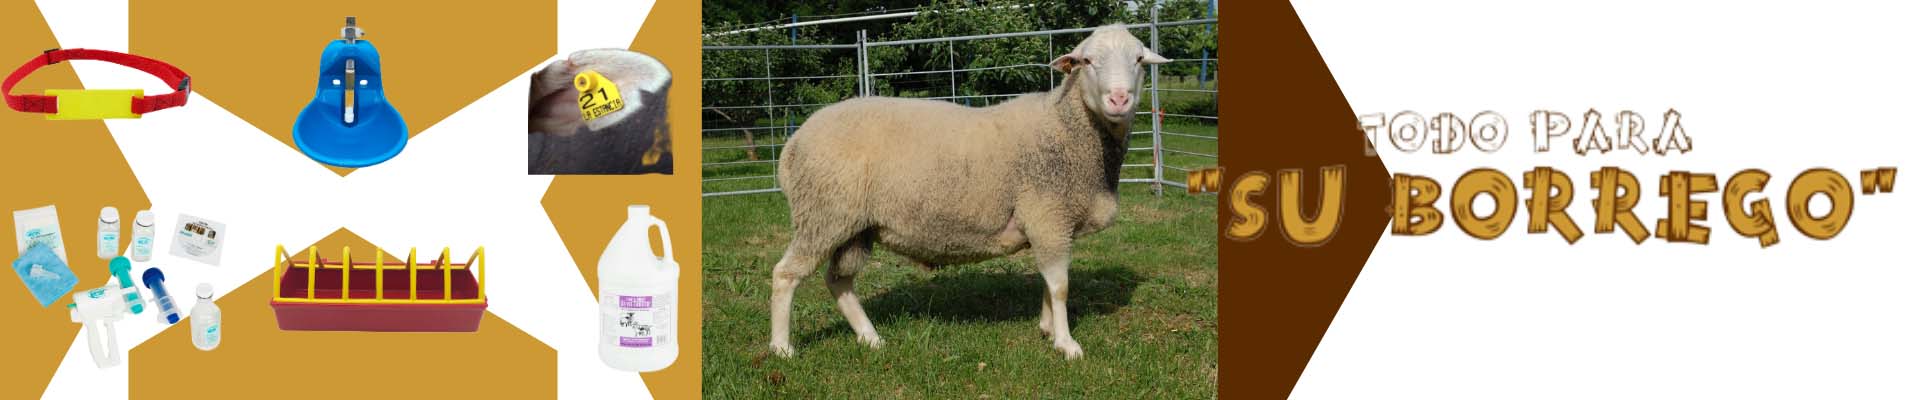 productos para ovinos y caprinos